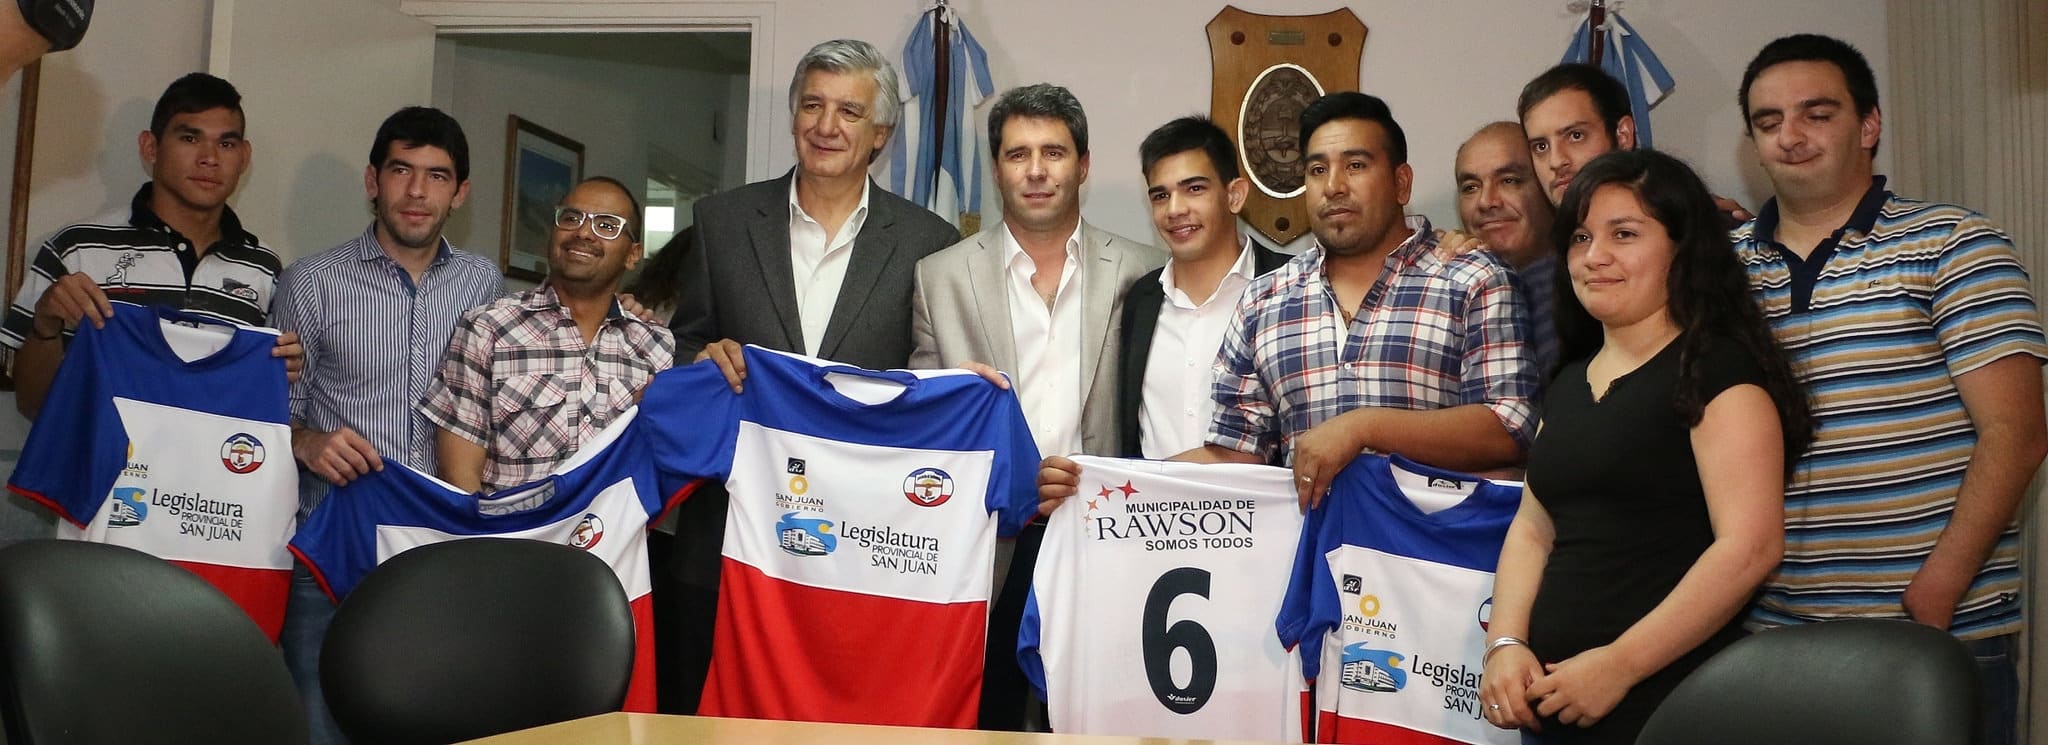 El Dr. Sergio Uñac junto a integrantes de la Selección San Juan de Fútbol Silencioso y autoridades provinciales.